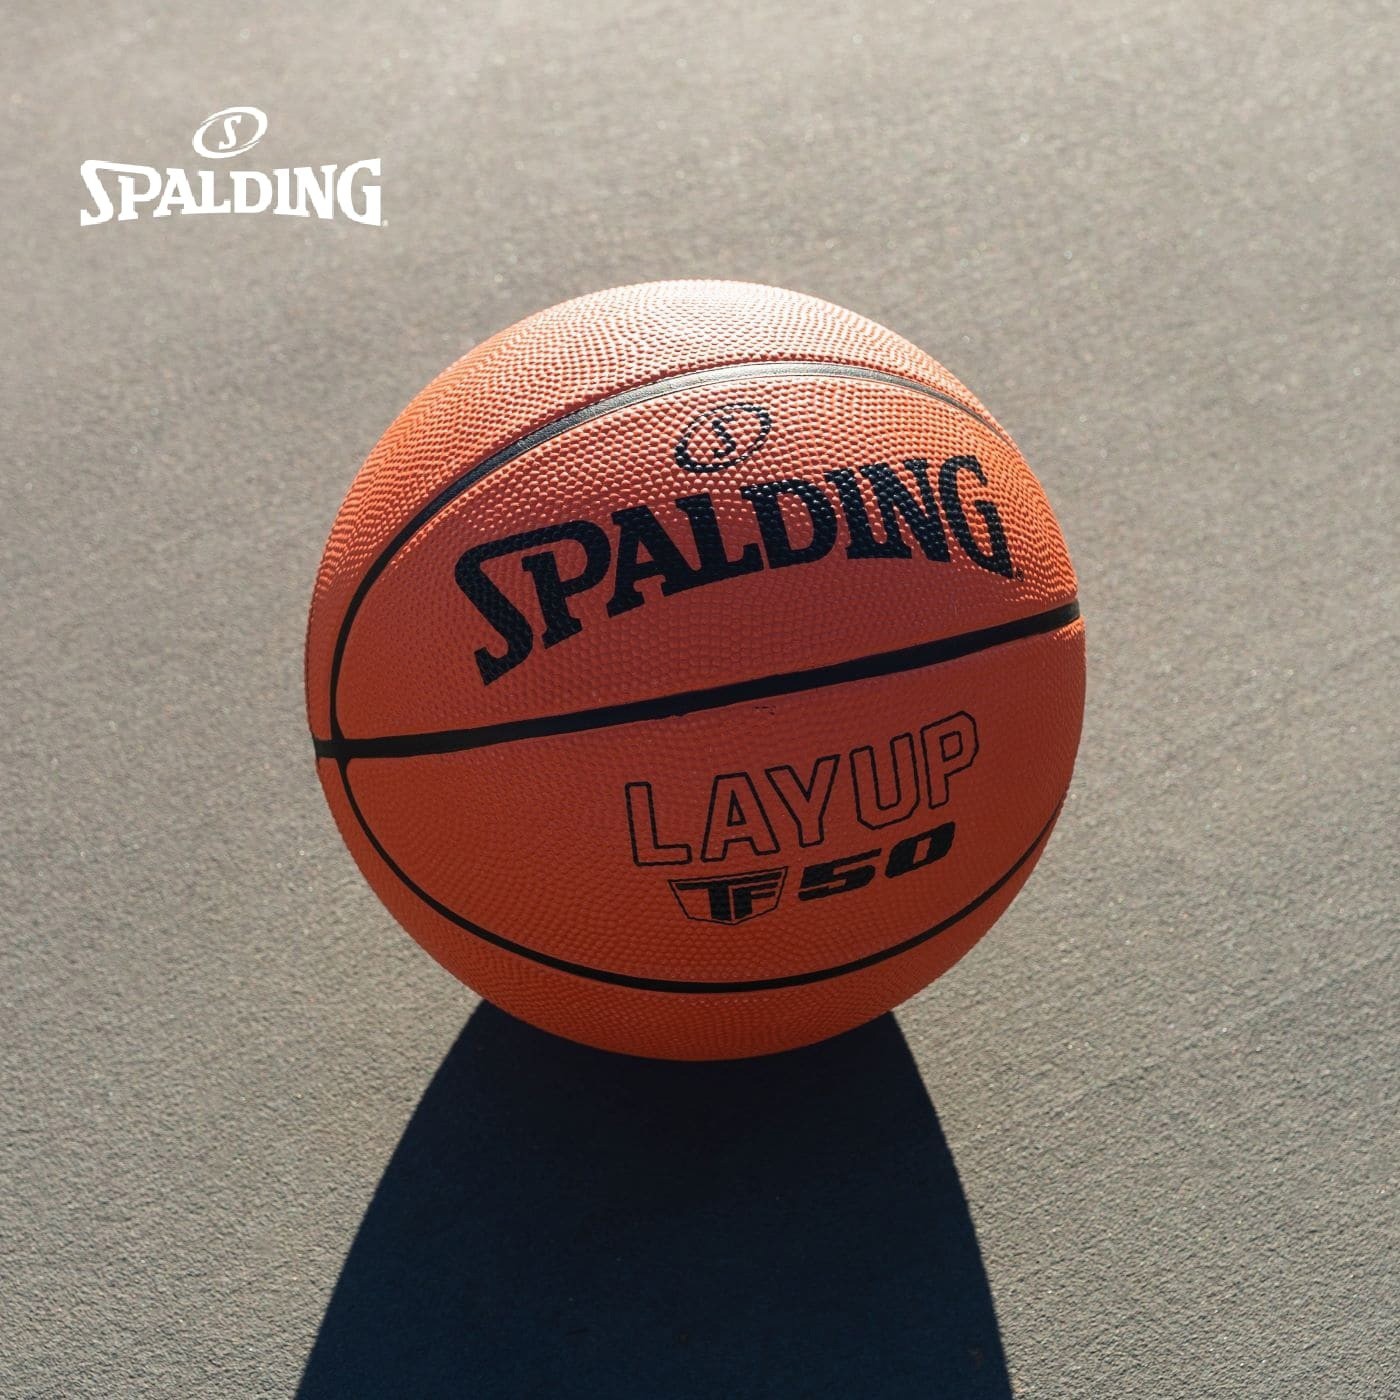 斯伯丁 TF-50 橡膠籃球七號 6入組耐用橡膠籃球專為休閒戶外運動而設計是一款適合籃球初學者入門的籃球